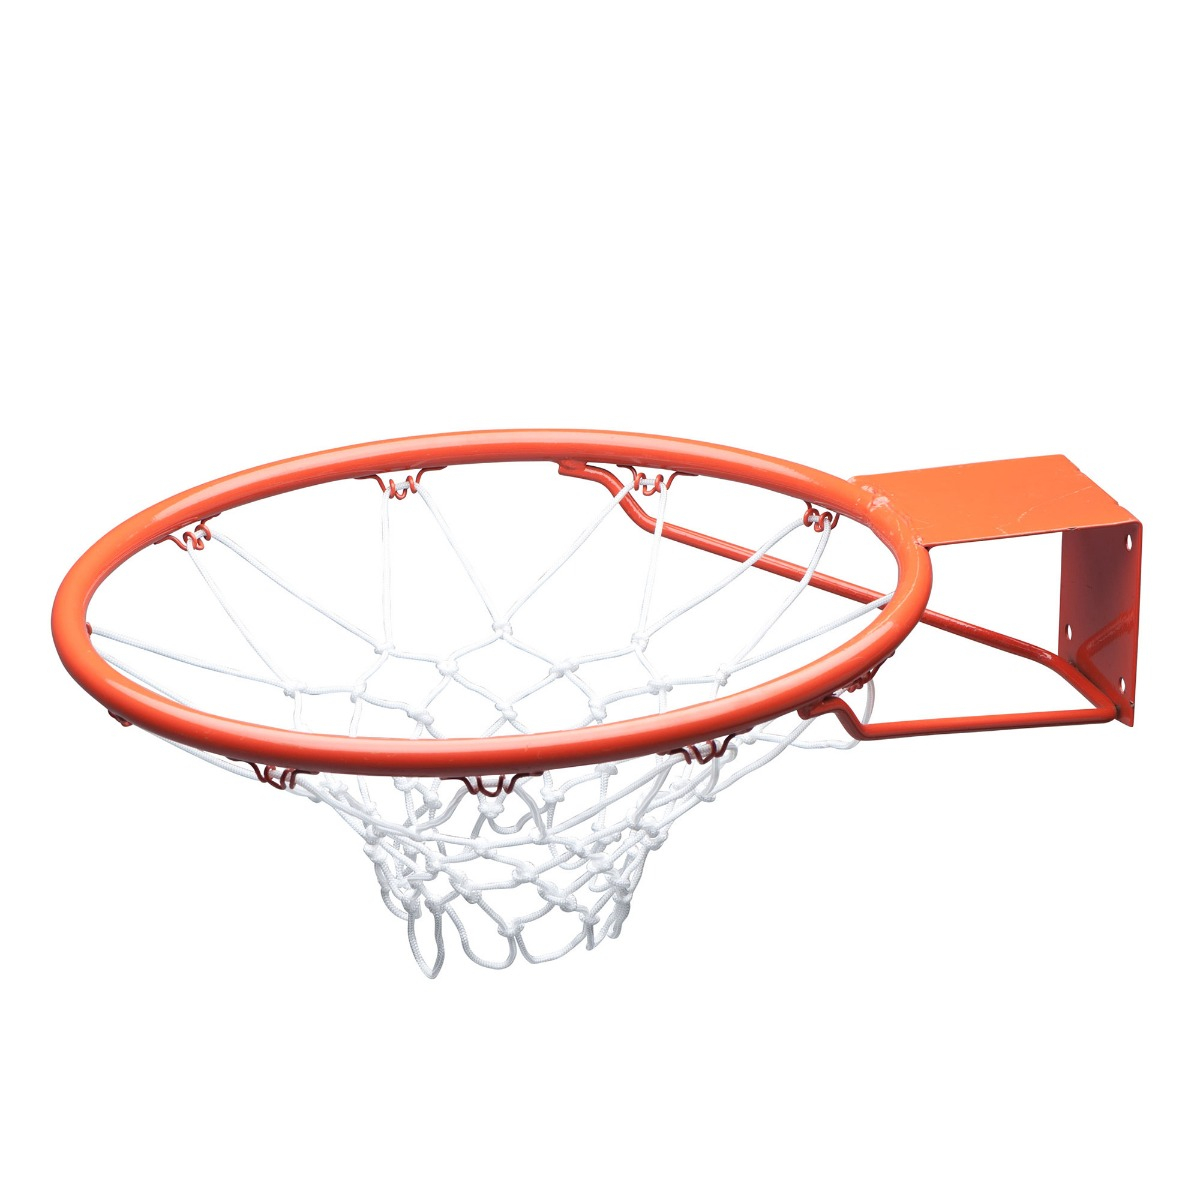 Canasta de baloncesto de pared Ø39 cm